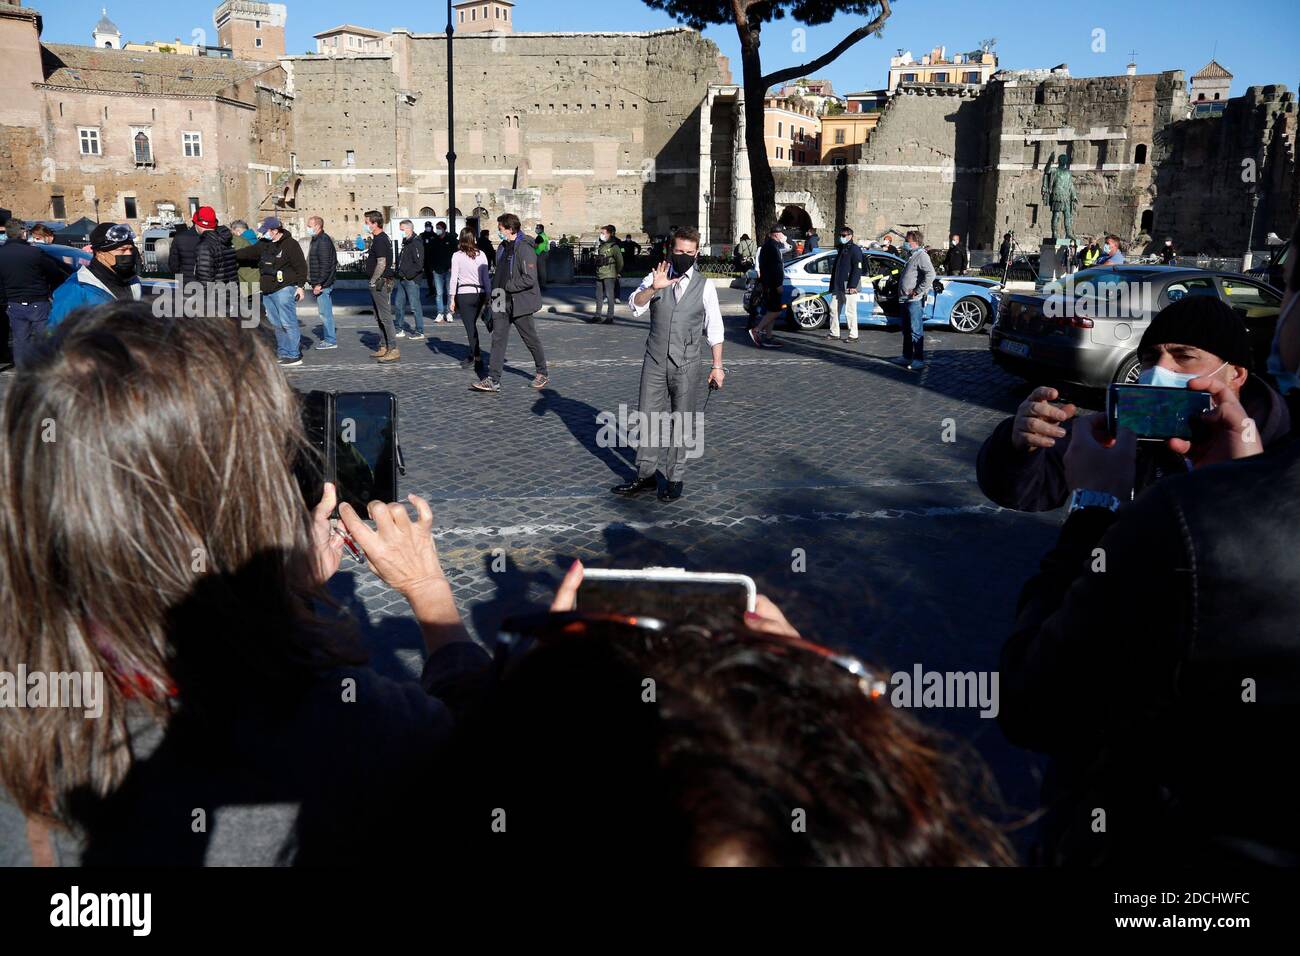 Roma, Italia. 21 Nov 2020. L'attore Tom Cruise saluta i suoi fan e fa selfie con loro sul set del film Missione Impossible 7 a Imperial Fora a Roma. Roma (Italia), 21 novembre 2020 Photo Samantha Zucchi Insifefoto Credit: Insifefoto srl/Alamy Live News Foto Stock